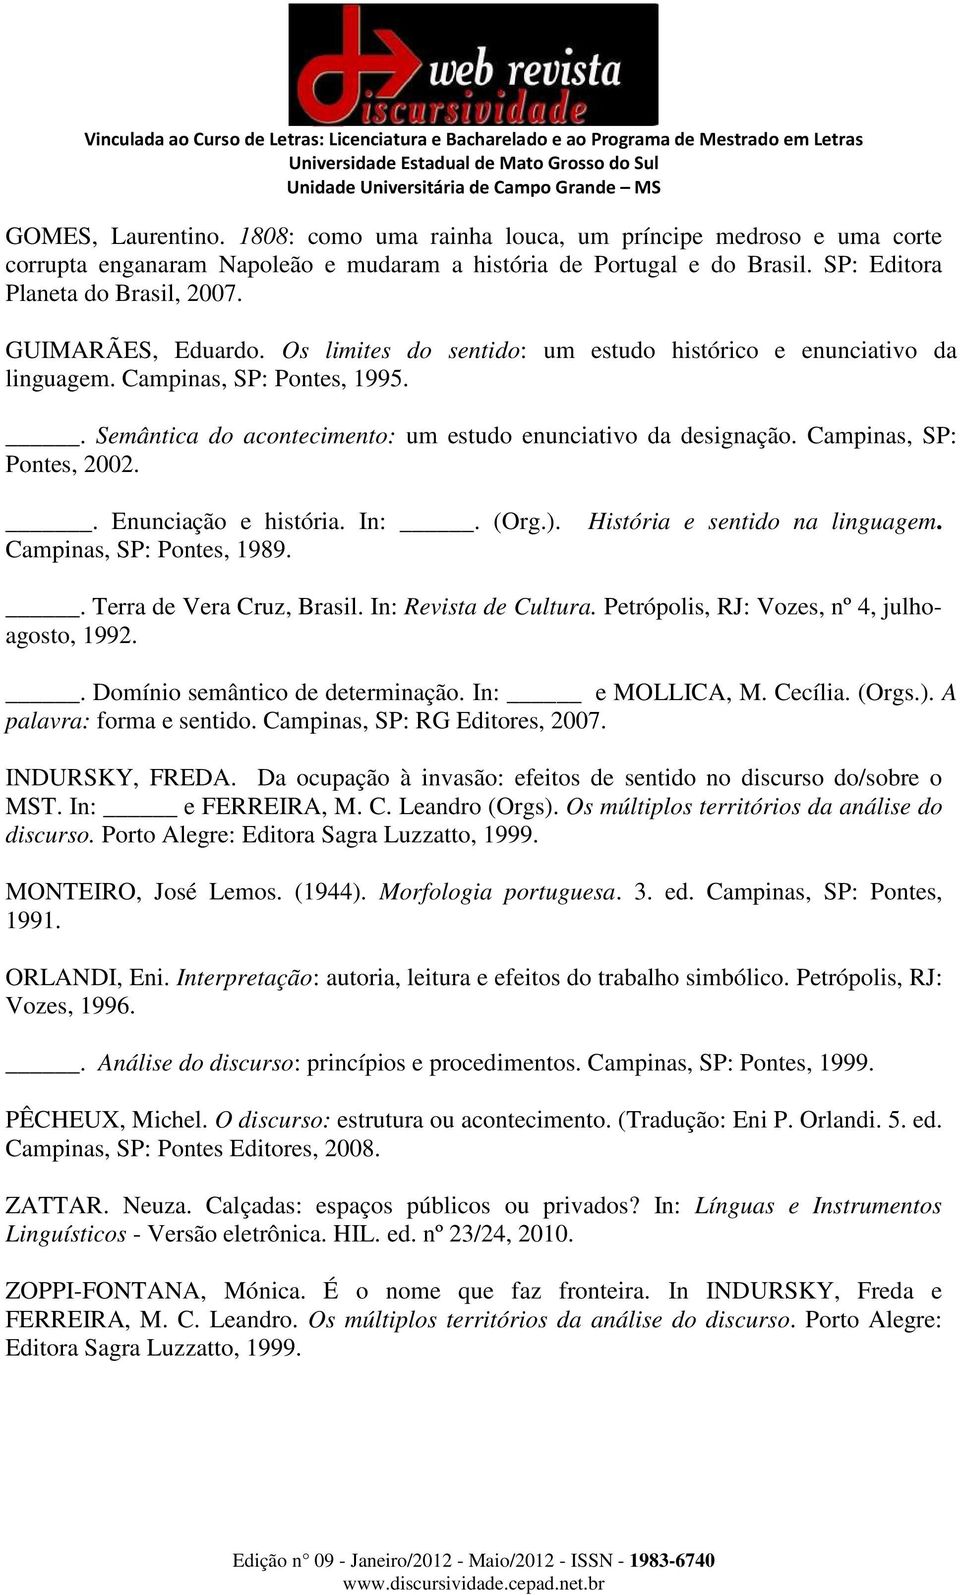 Campinas, SP: Pontes, 2002.. Enunciação e história. In:. (Org.). Campinas, SP: Pontes, 1989. História e sentido na linguagem.. Terra de Vera Cruz, Brasil. In: Revista de Cultura.